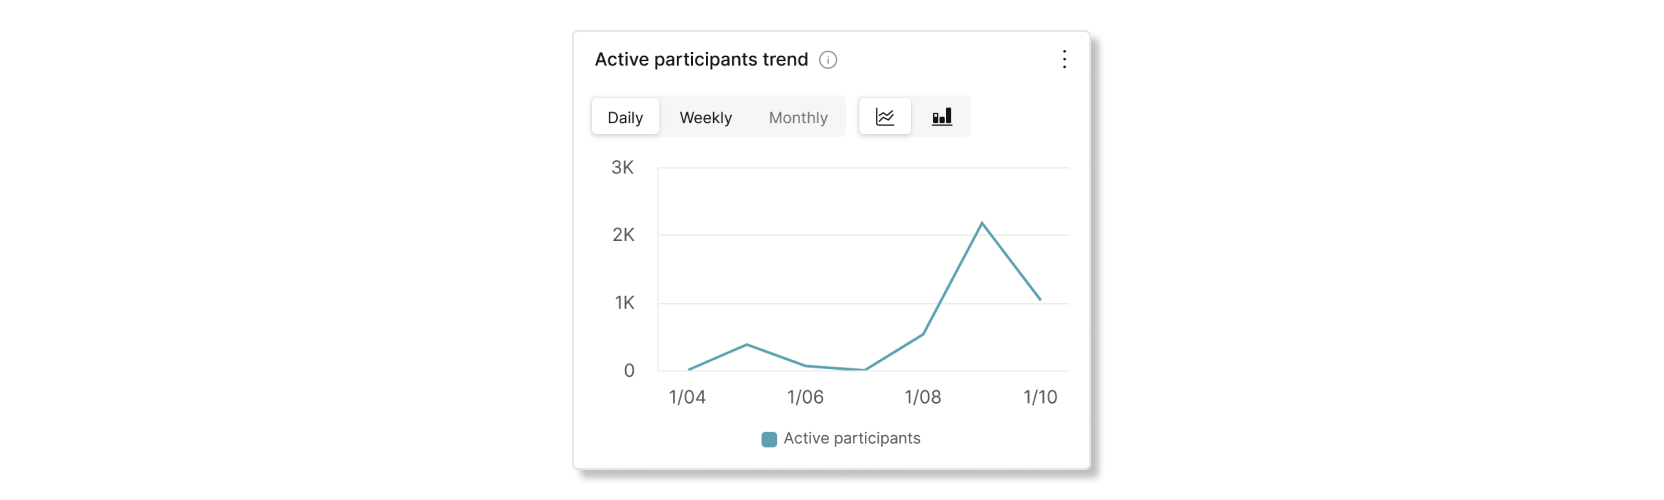 Gráfico de tendência de participantes ativos na análise do Control Hub Slido